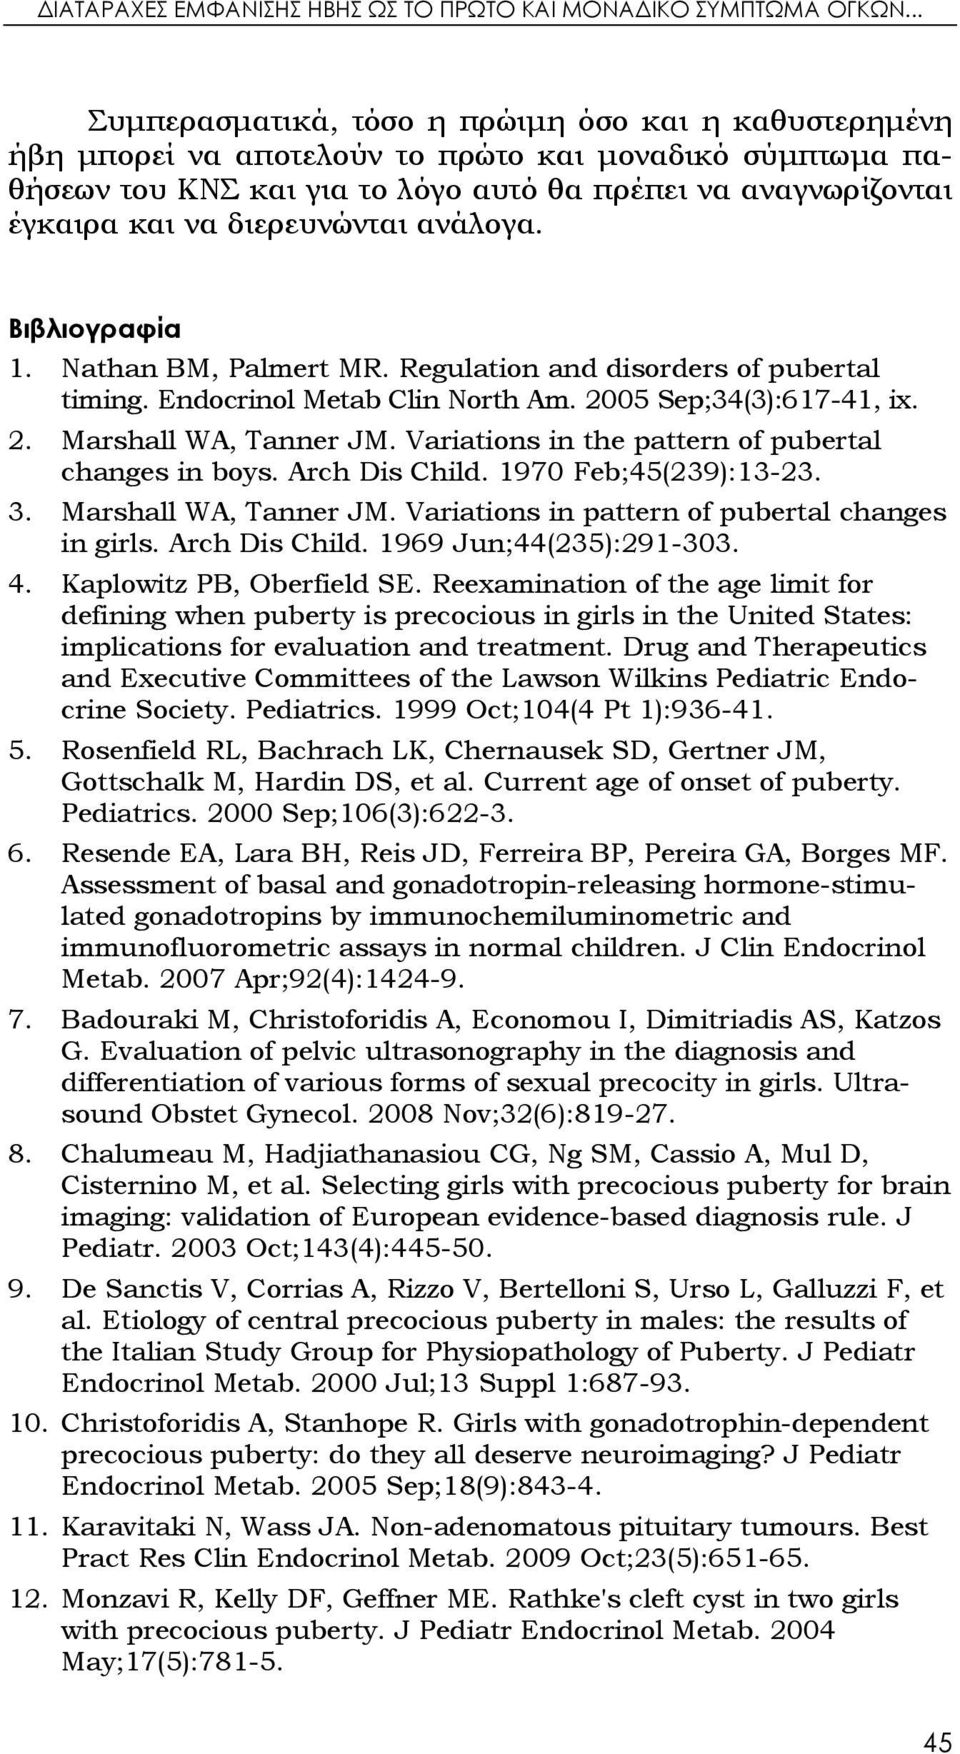 διερευνώνται ανάλογα. Βιβλιογραφία 1. Nathan BM, Palmert MR. Regulation and disorders of pubertal timing. Endocrinol Metab Clin North Am. 2005 Sep;34(3):617-41, ix. 2. Marshall WA, Tanner JM.